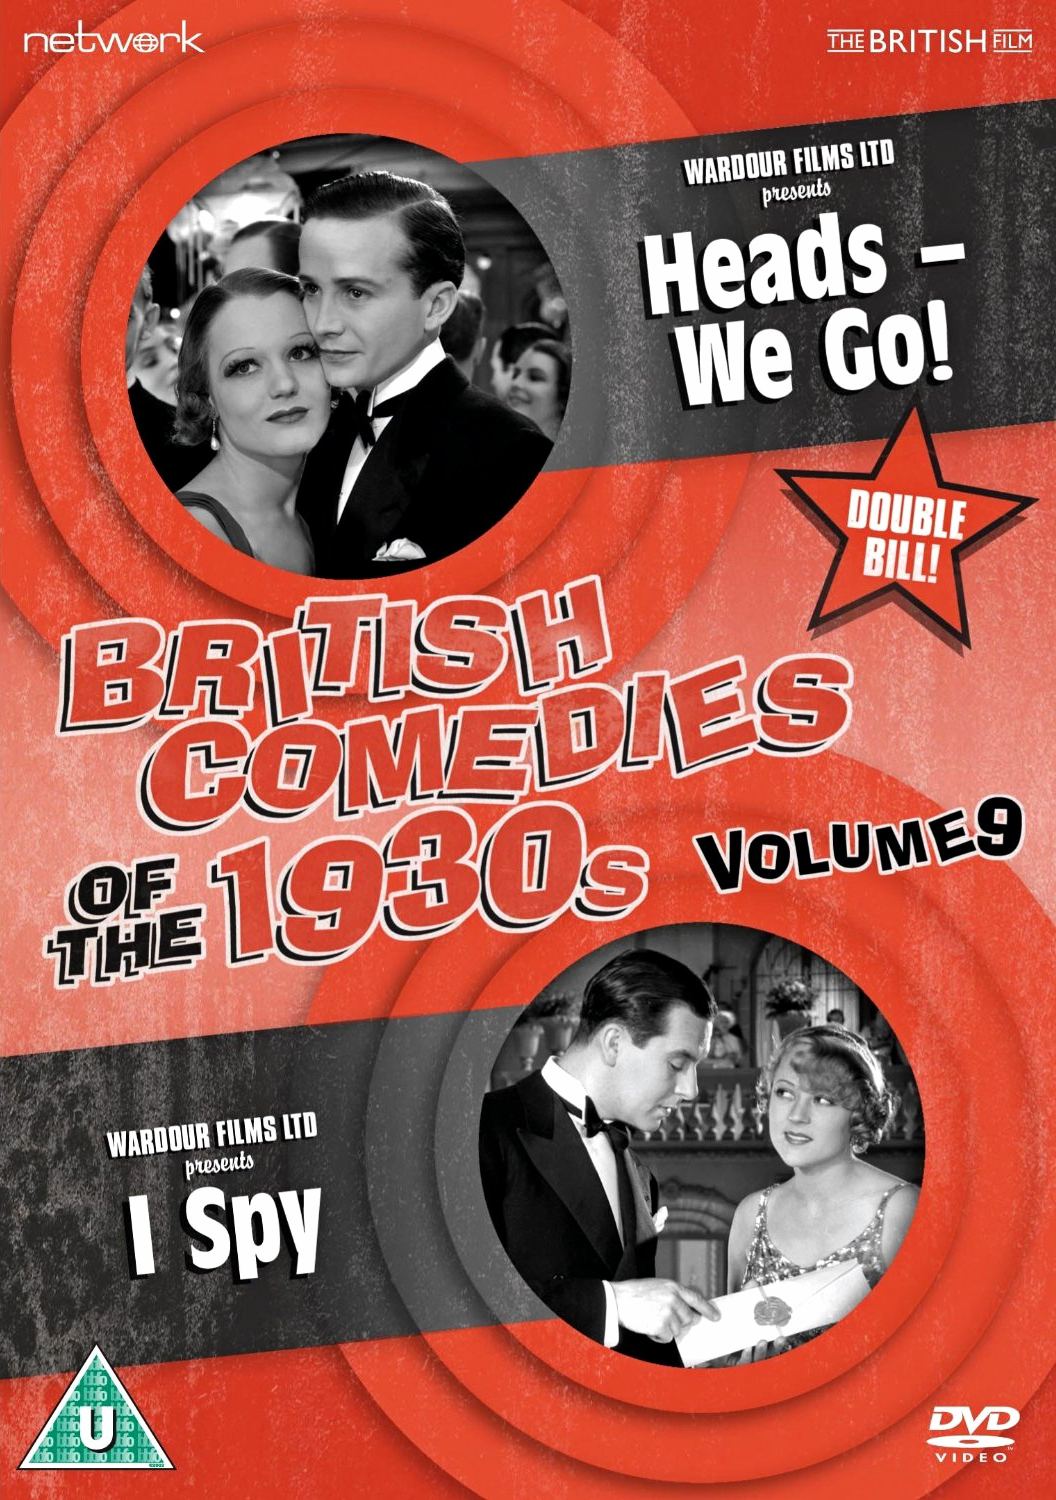 I Spy (1934) Screenshot 1 